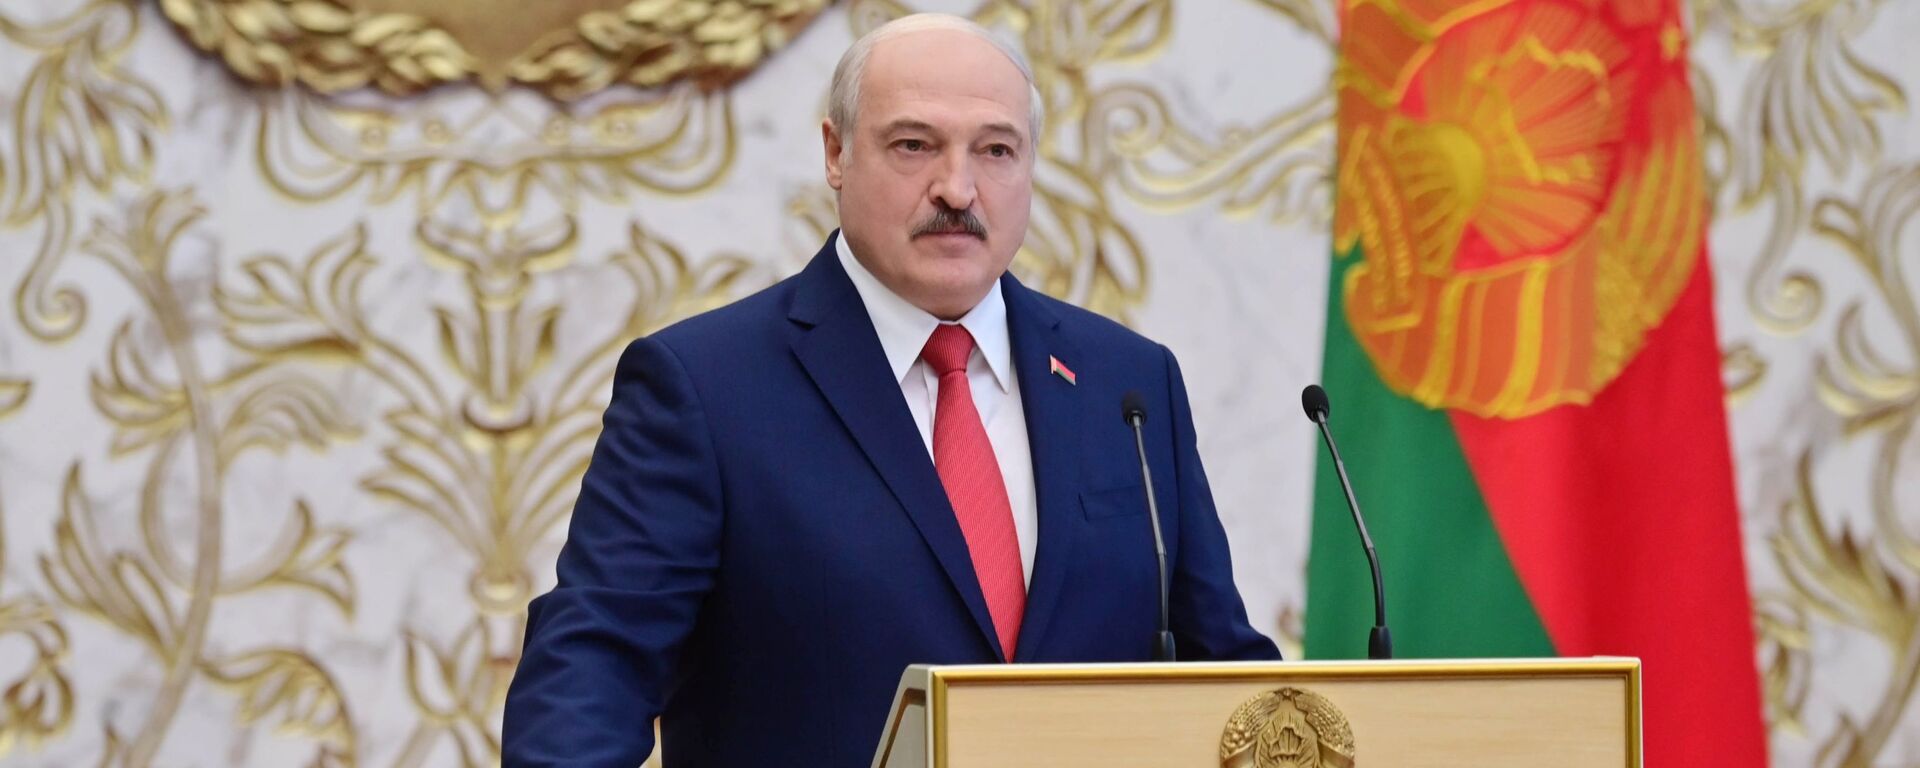 Вступление А. Лукашенко в должность президента Белоруссии - Sputnik Латвия, 1920, 06.11.2020